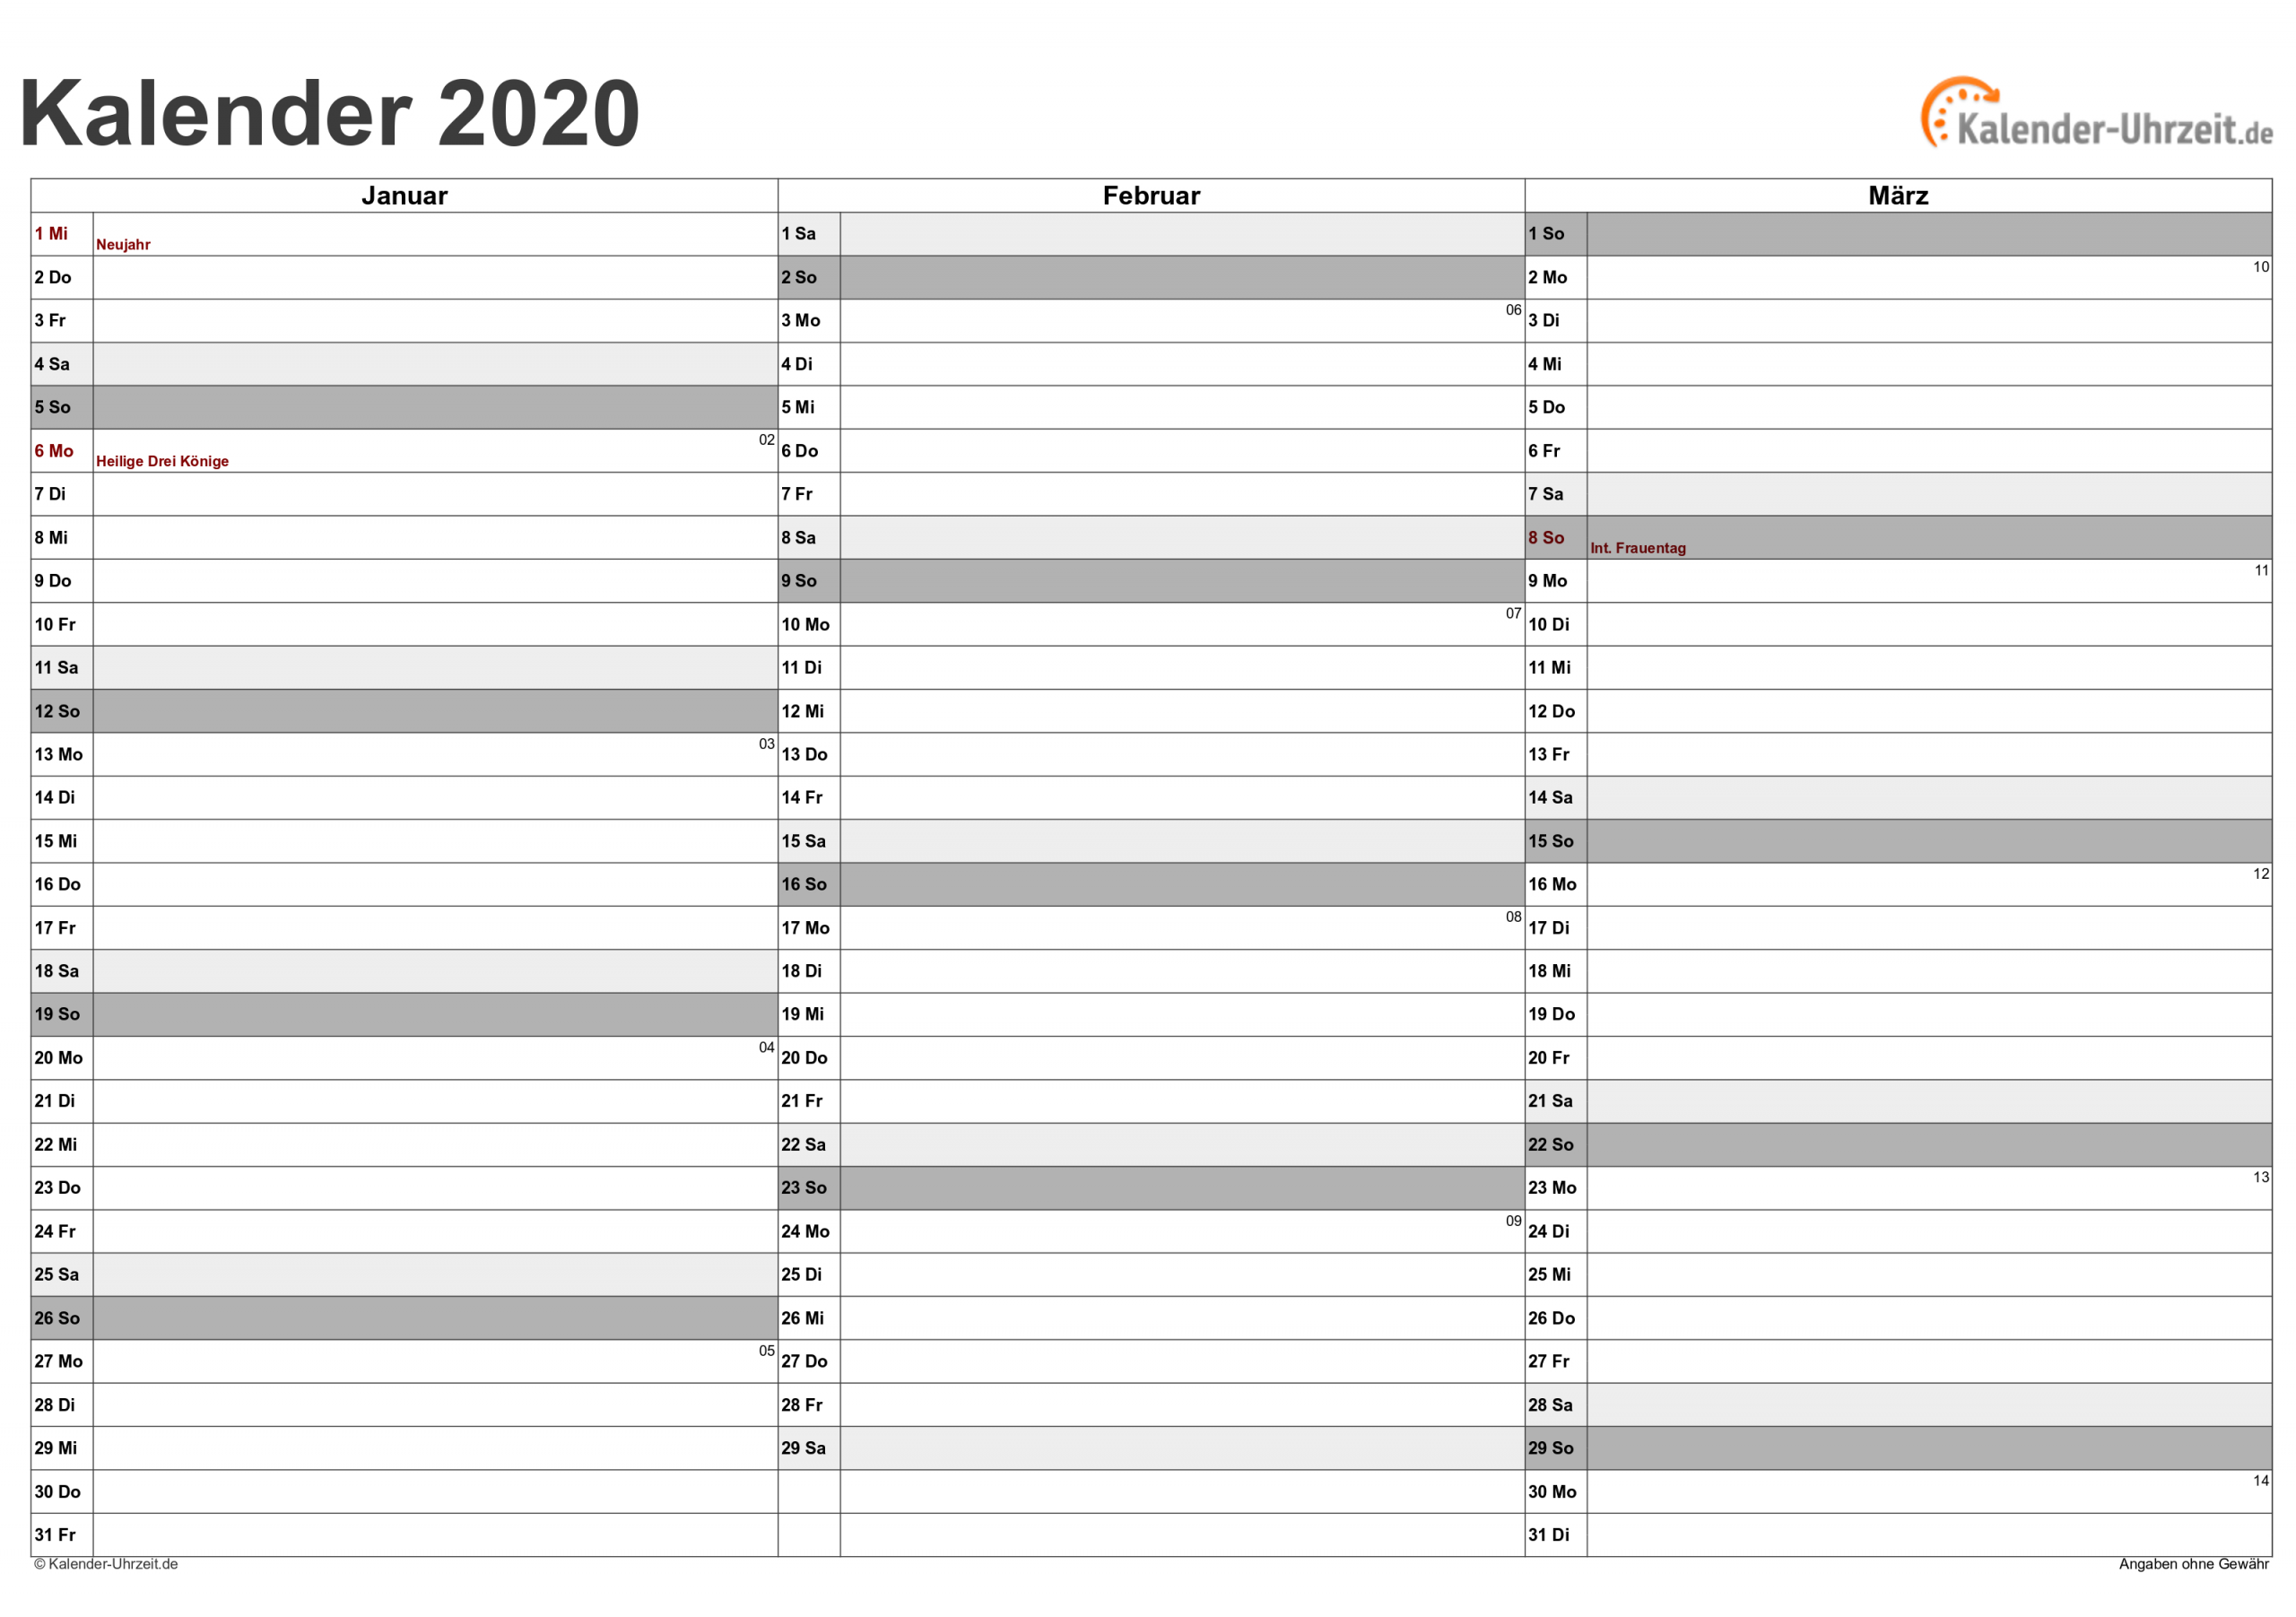 Kalender 2020 Zum Ausdrucken - Kostenlos in Quartalskalender Zum Ausdrucken